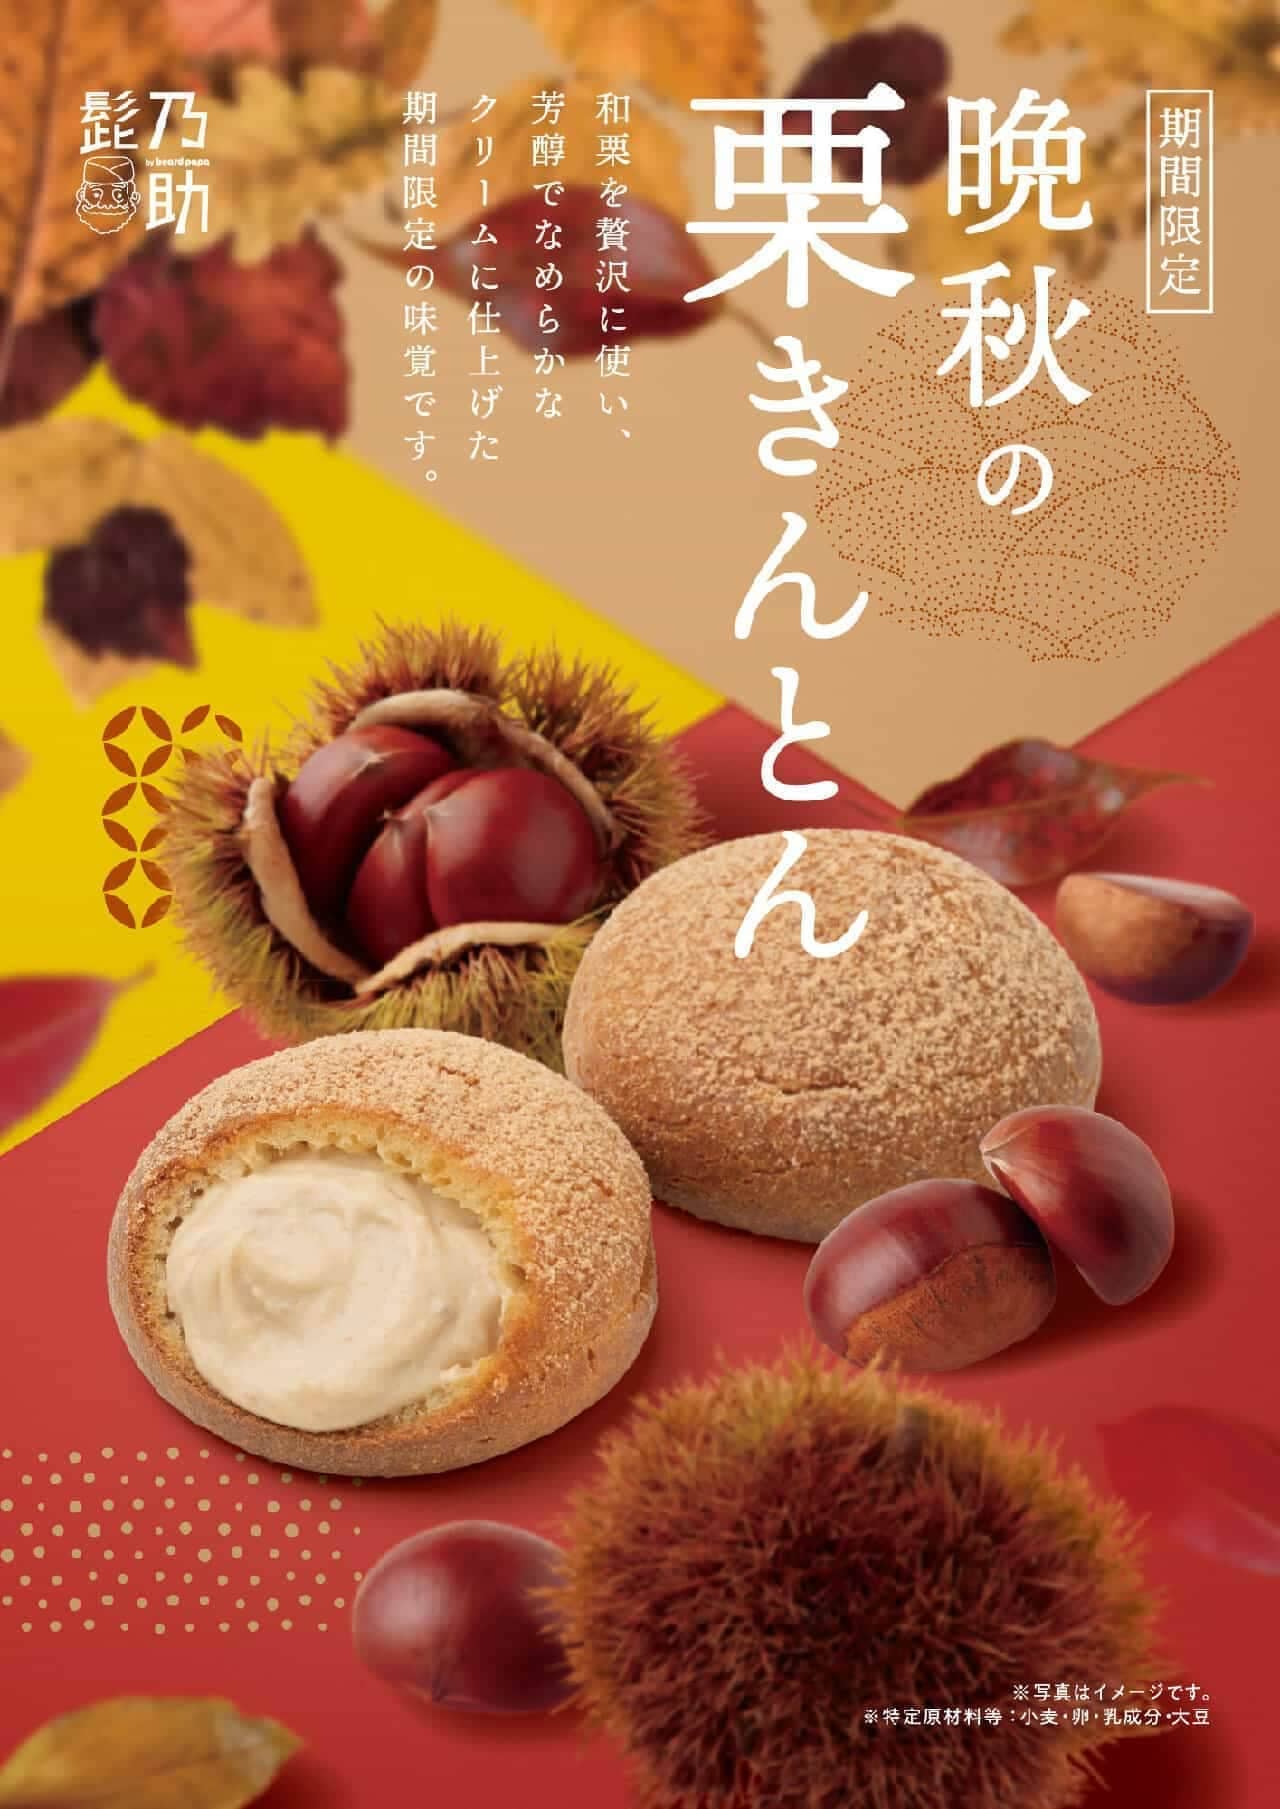 Higenosuke "Kuri-kinton in late autumn"